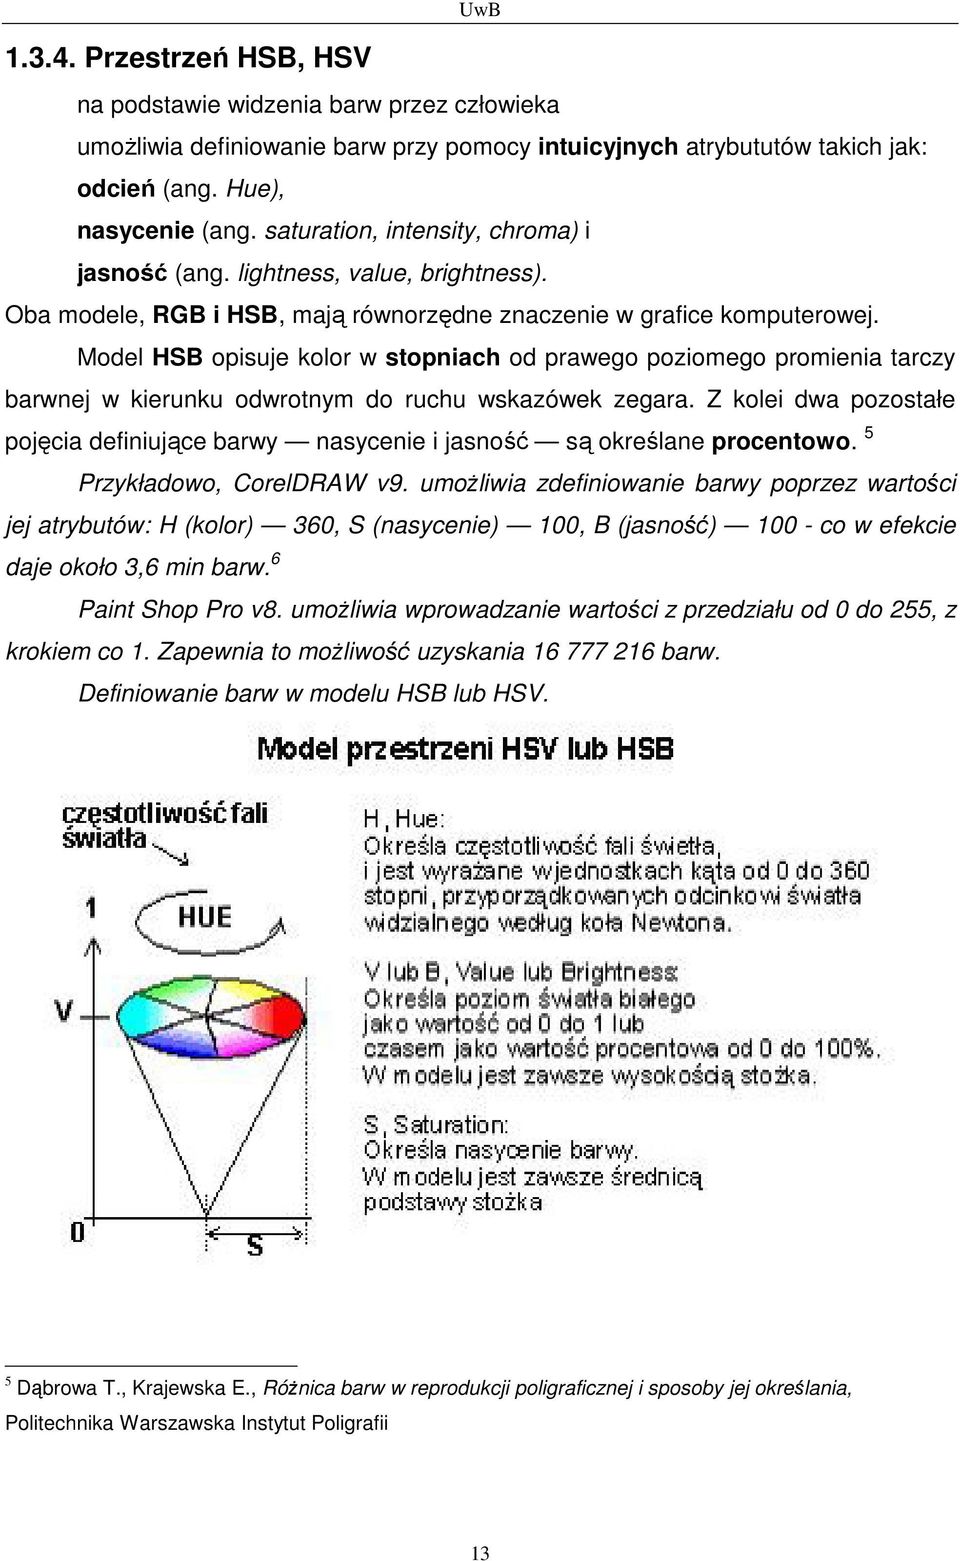 Model HSB opisuje kolor w stopniach od prawego poziomego promienia tarczy barwnej w kierunku odwrotnym do ruchu wskazówek zegara.